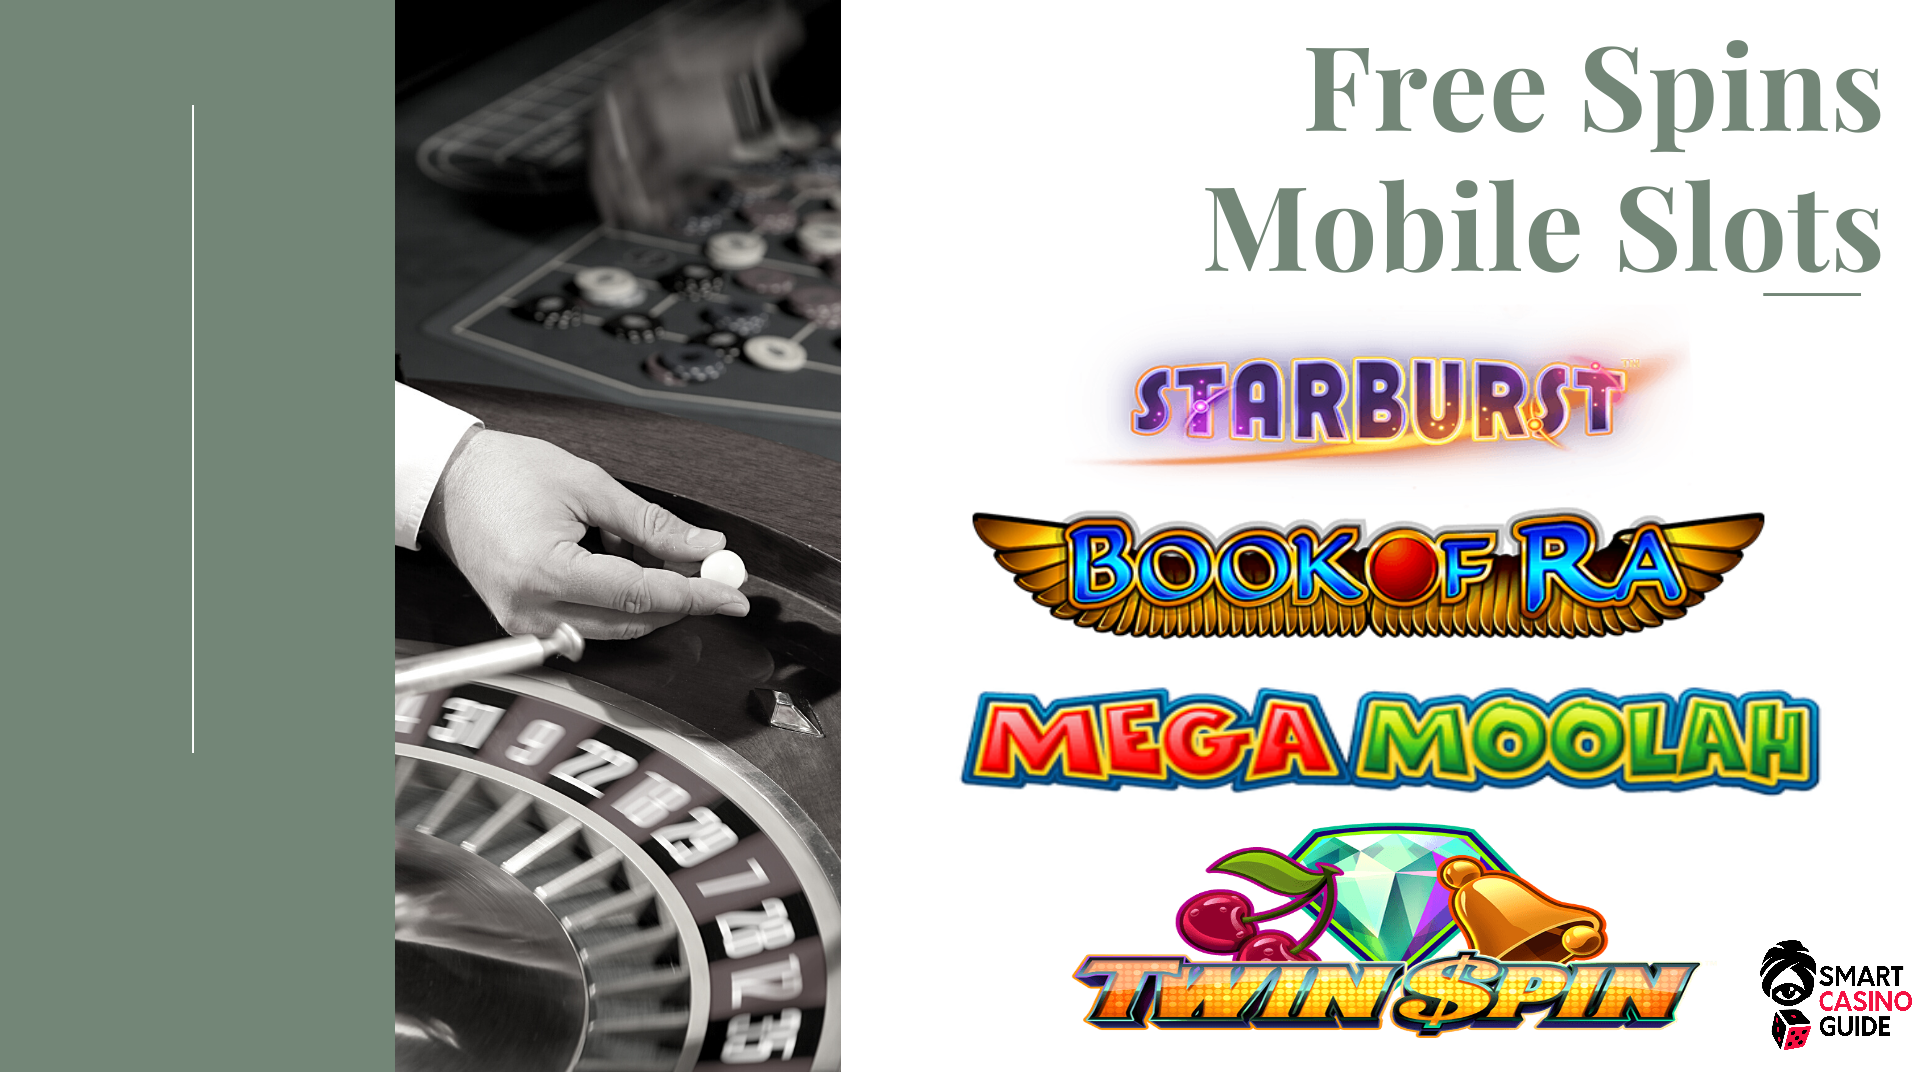 Mobile Slots No Deposit Free Spins Gaming